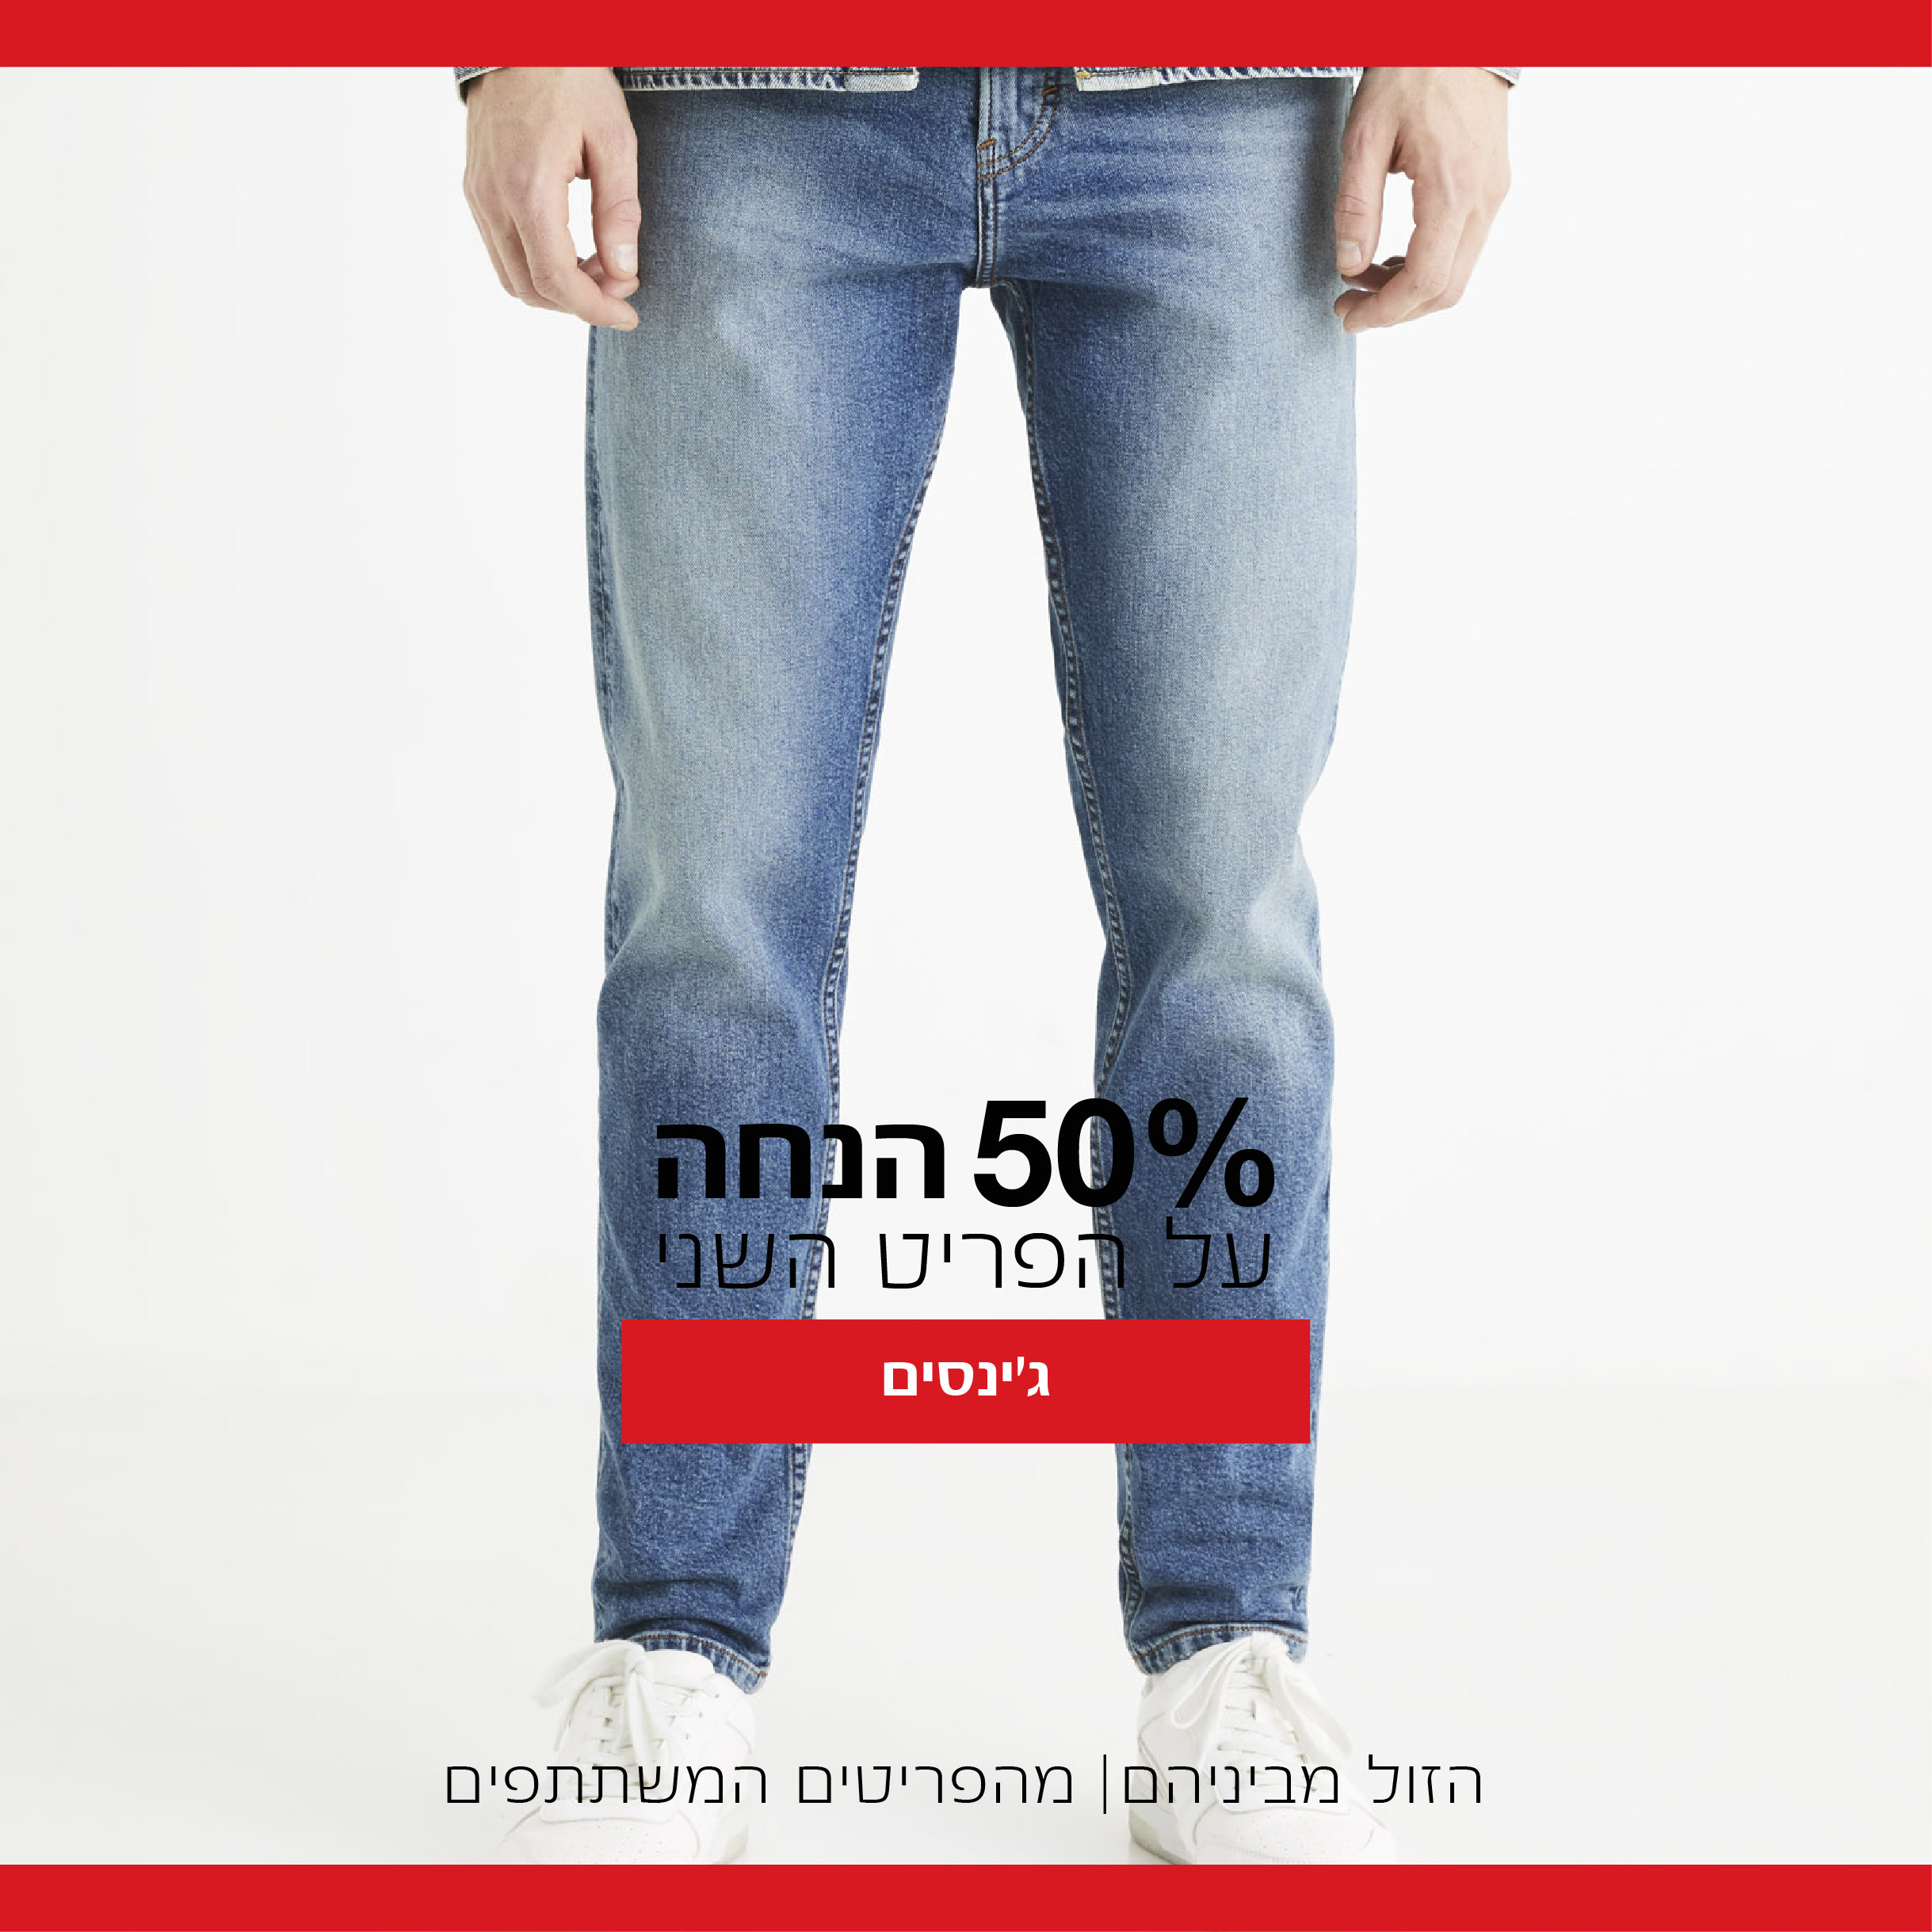 ג'ינסים השני ב 50% הנחה